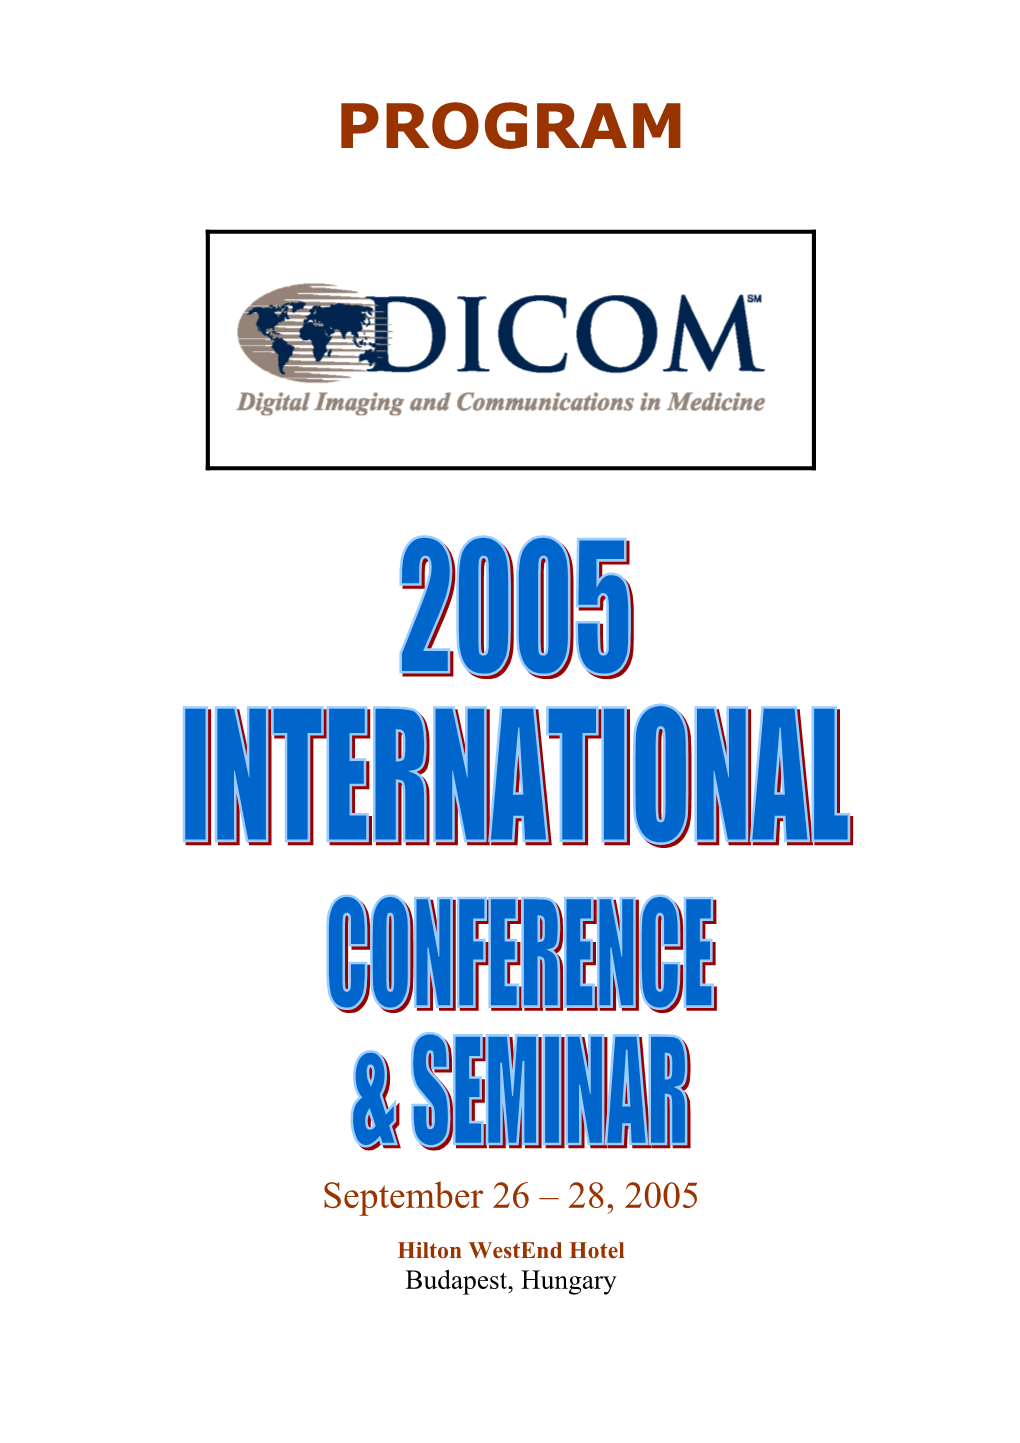 DICOM 2005 International Conference